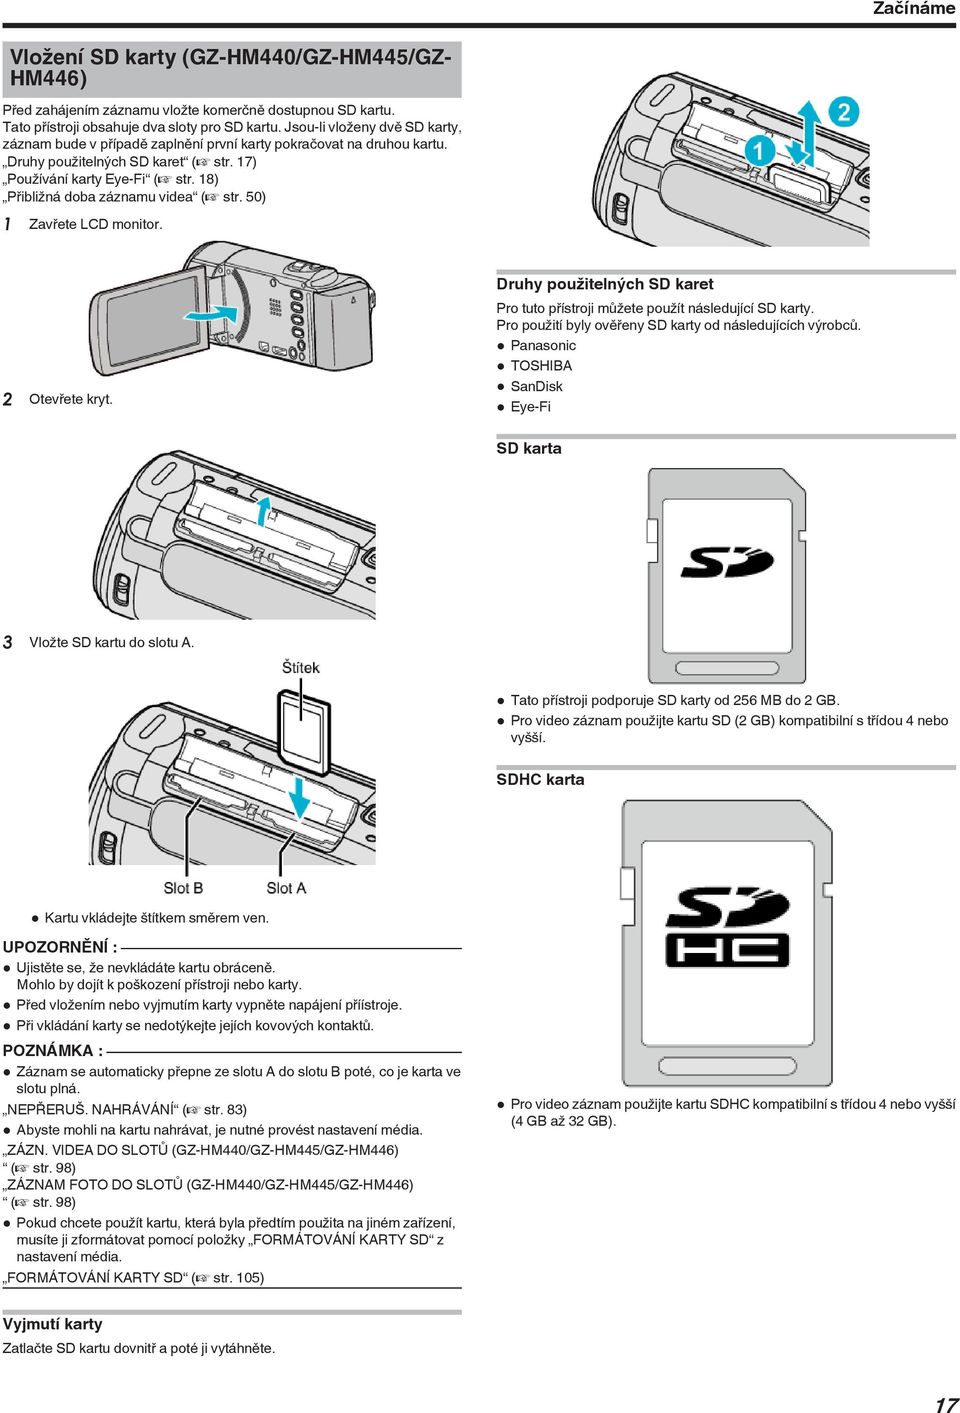 Otevřete kryt Druhy použitelných SD karet Pro tuto přístroji můžete použít následující SD karty Pro použití byly ověřeny SD karty od následujících výrobců 0 Panasonic 0 TOSHIBA 0 SanDisk 0 Eye-Fi SD